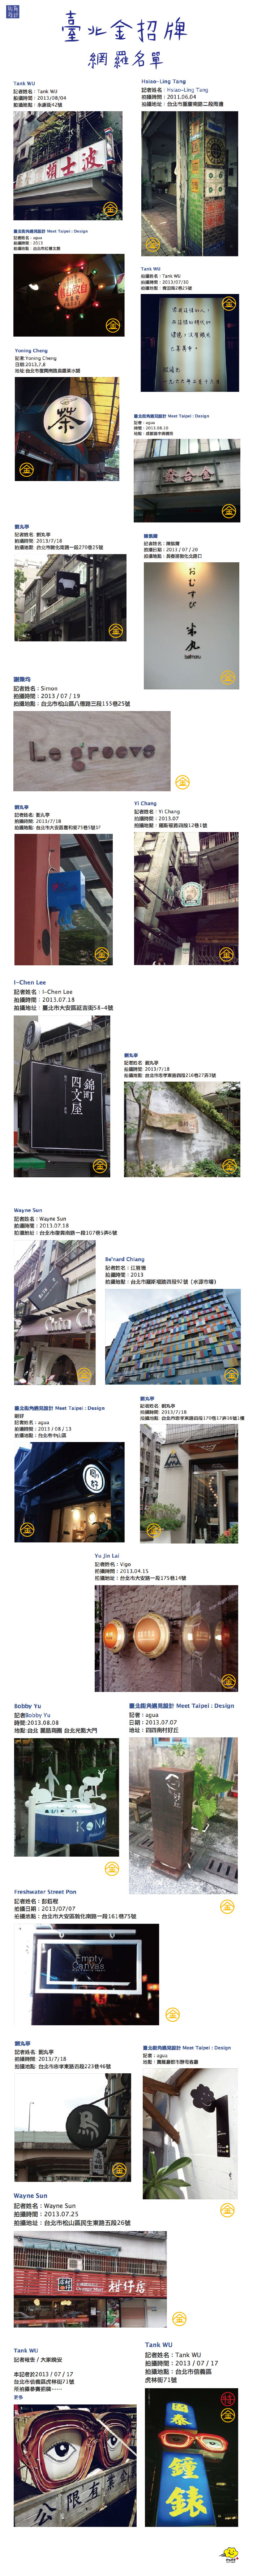 水越設計, AGUADesign, Taiwan, Taipei, City Yeast, 都市酵母, 台北, 台灣,金招牌